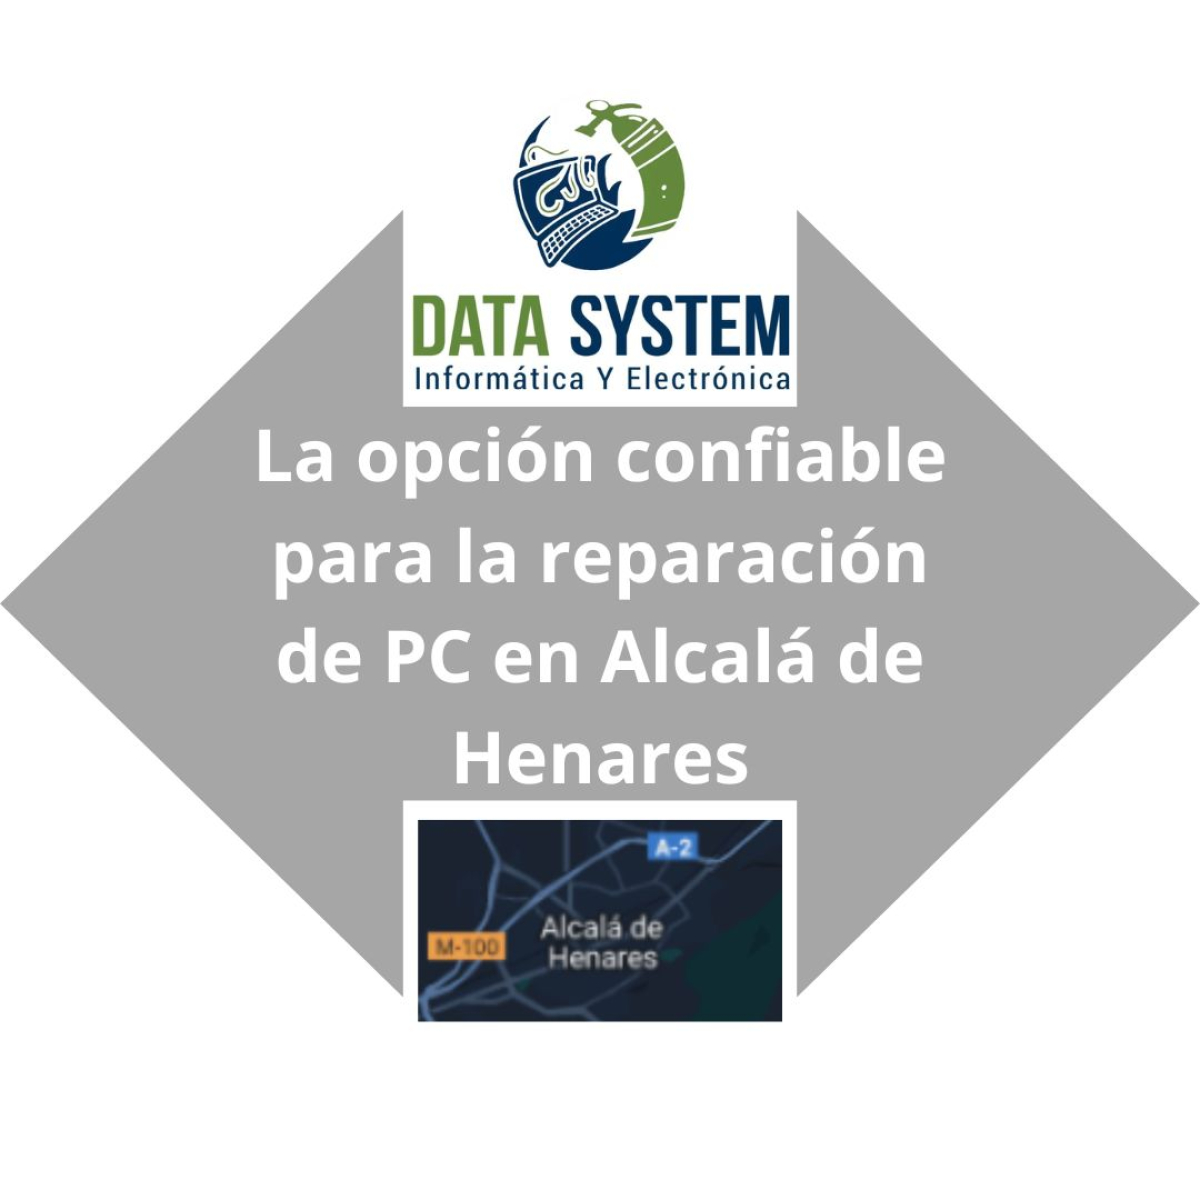 DATA SYSTEM - La opción confiable para la reparación de PC en Alcalá de Henares